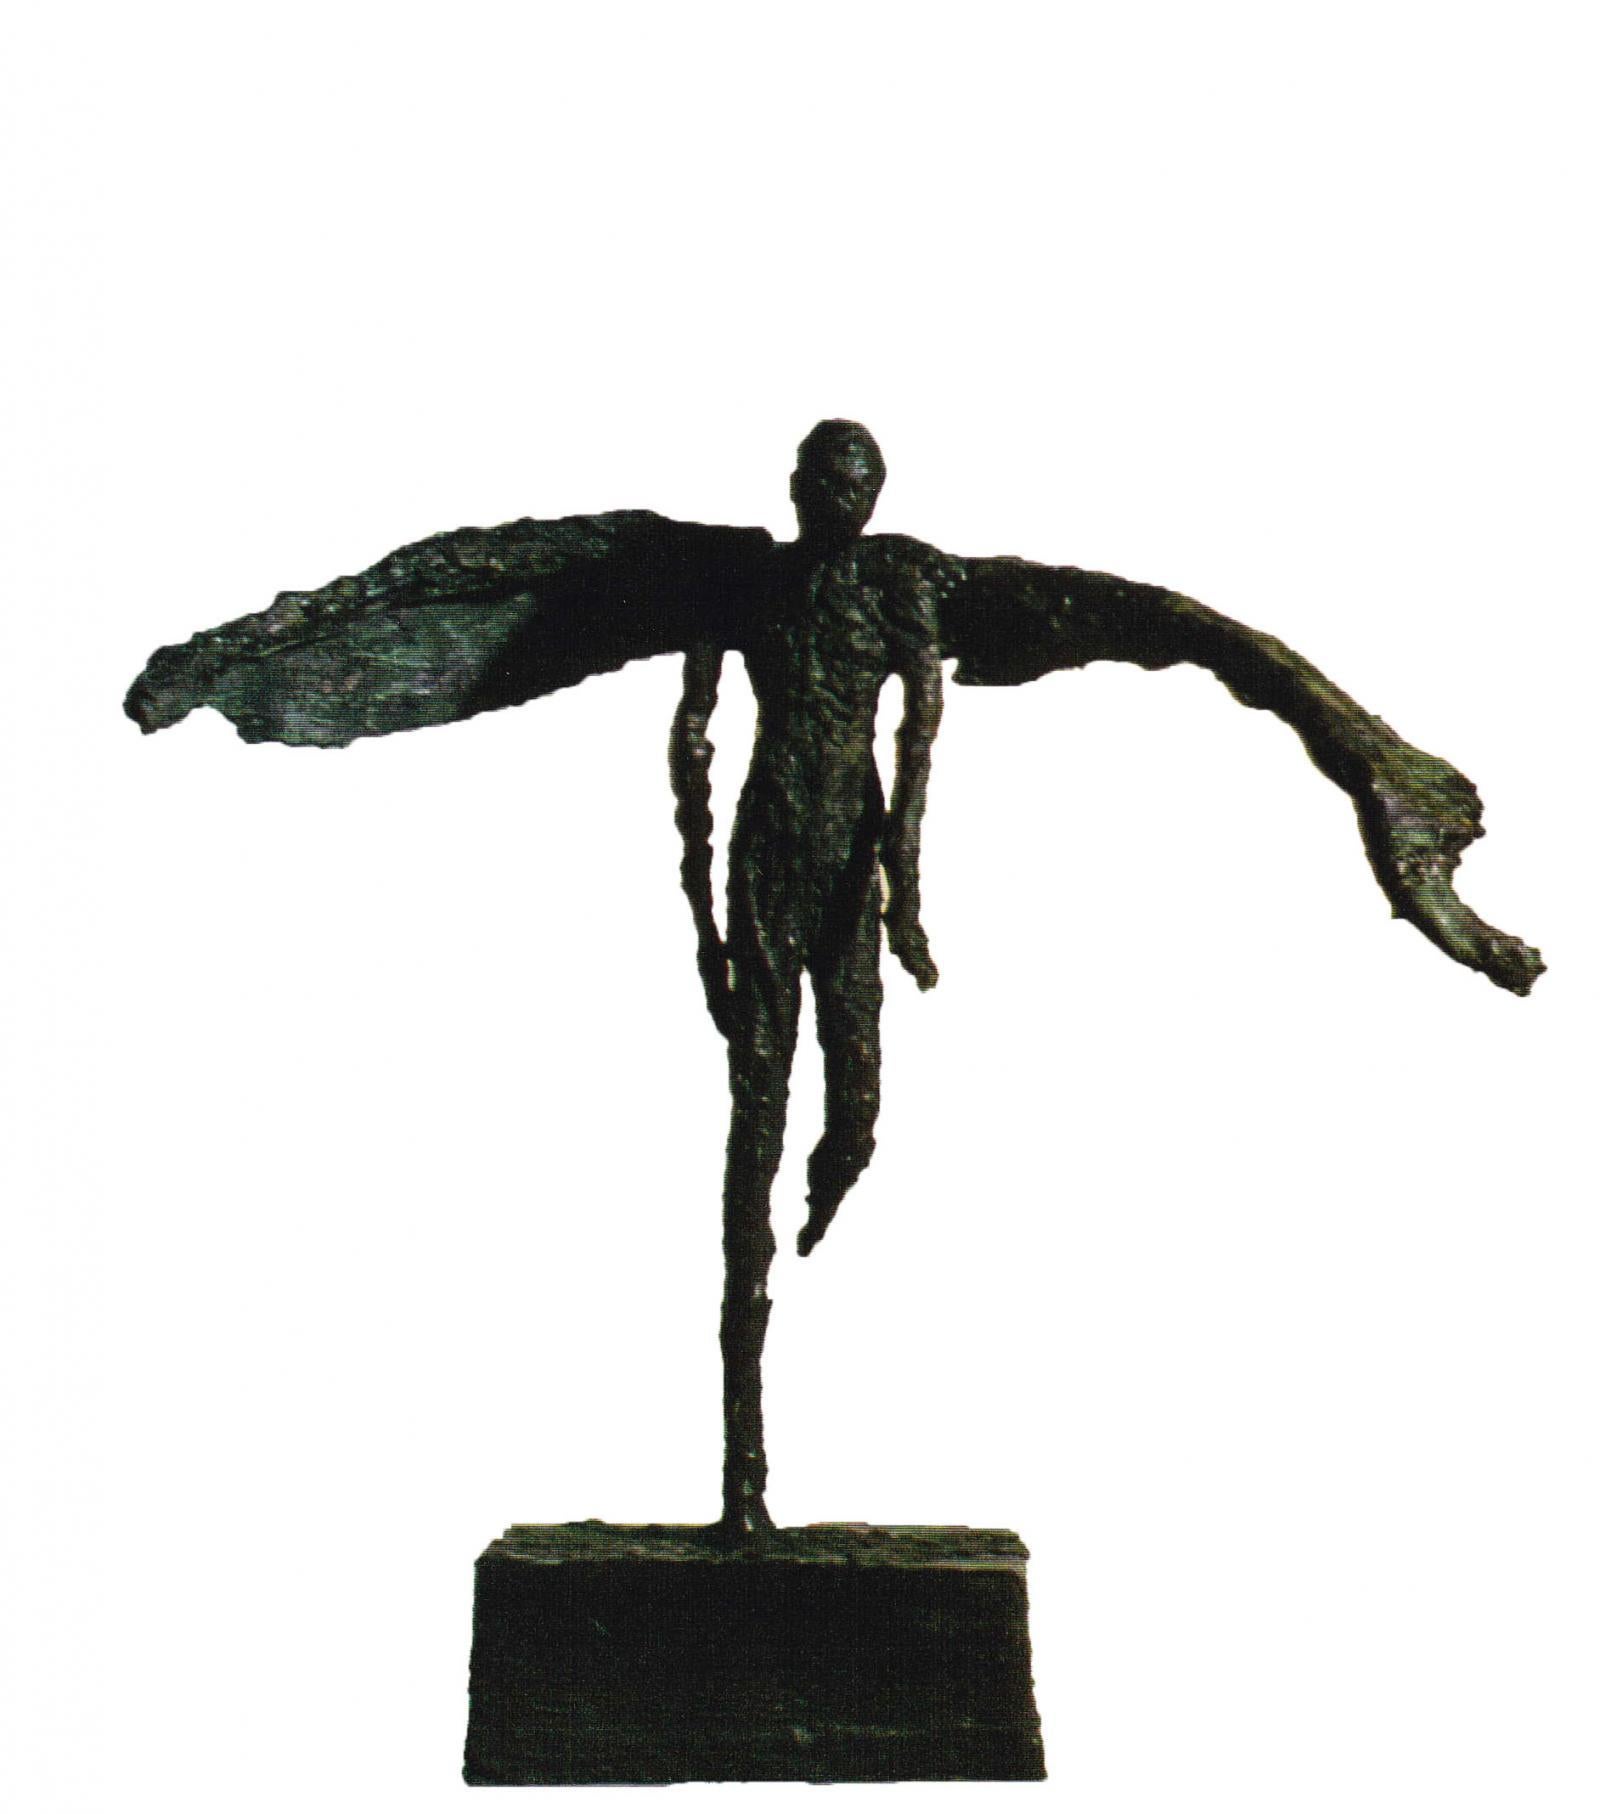 Artiste : Emmanuel Okoro
Dimensions (HxLxP) :  37 × 33 × 20 cm
Matériaux : Sculpture en résine de bronze
Edition : 5 de 12
Signé au dos
Sculpture figurative d'un ange / homme avec des ailes 
Okoro va jusqu'à révéler l'essence d'un état d'être,